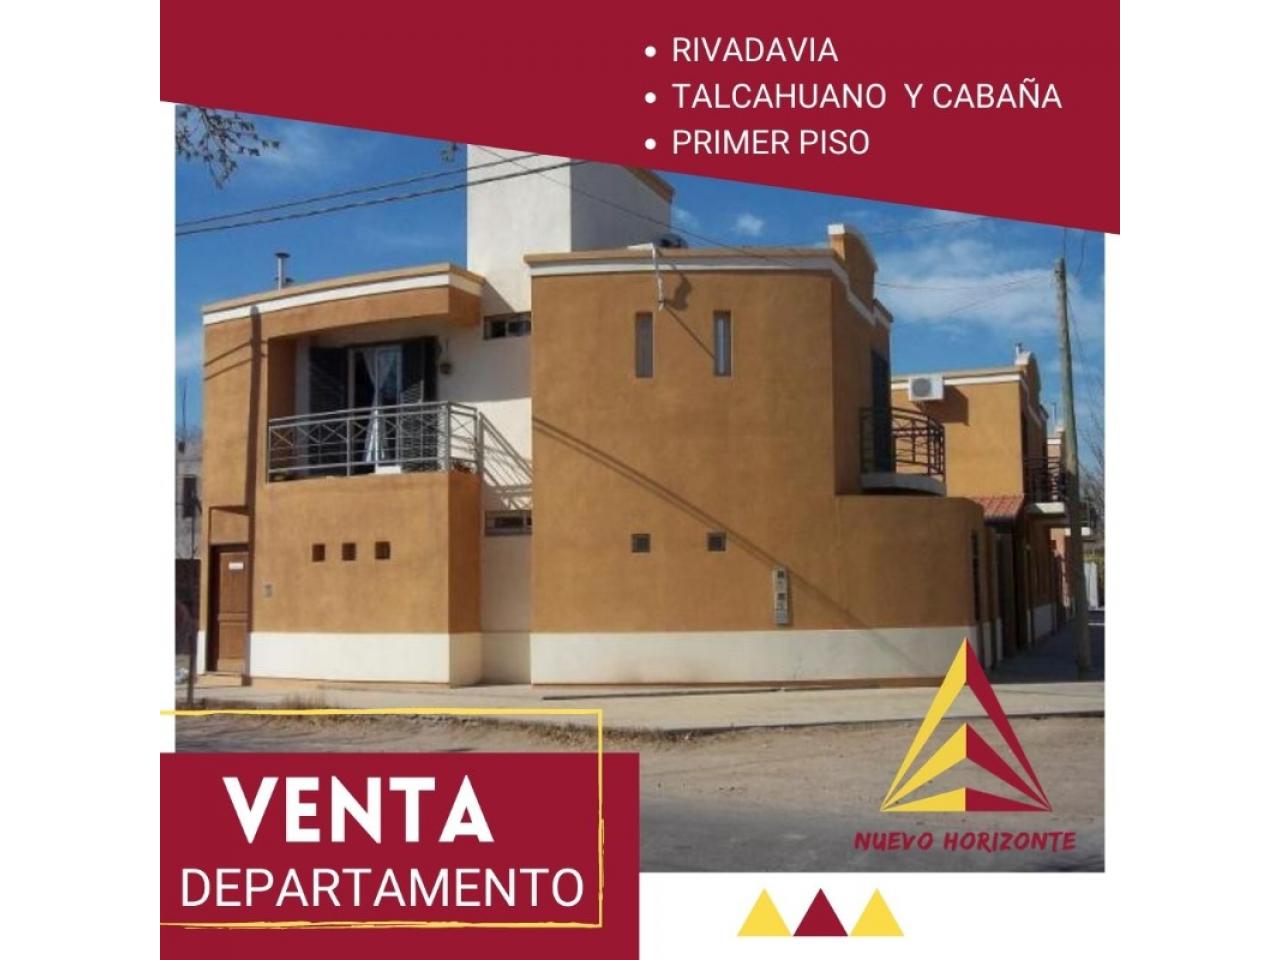 Departamento En Rivadavia, 1 Dormitorio